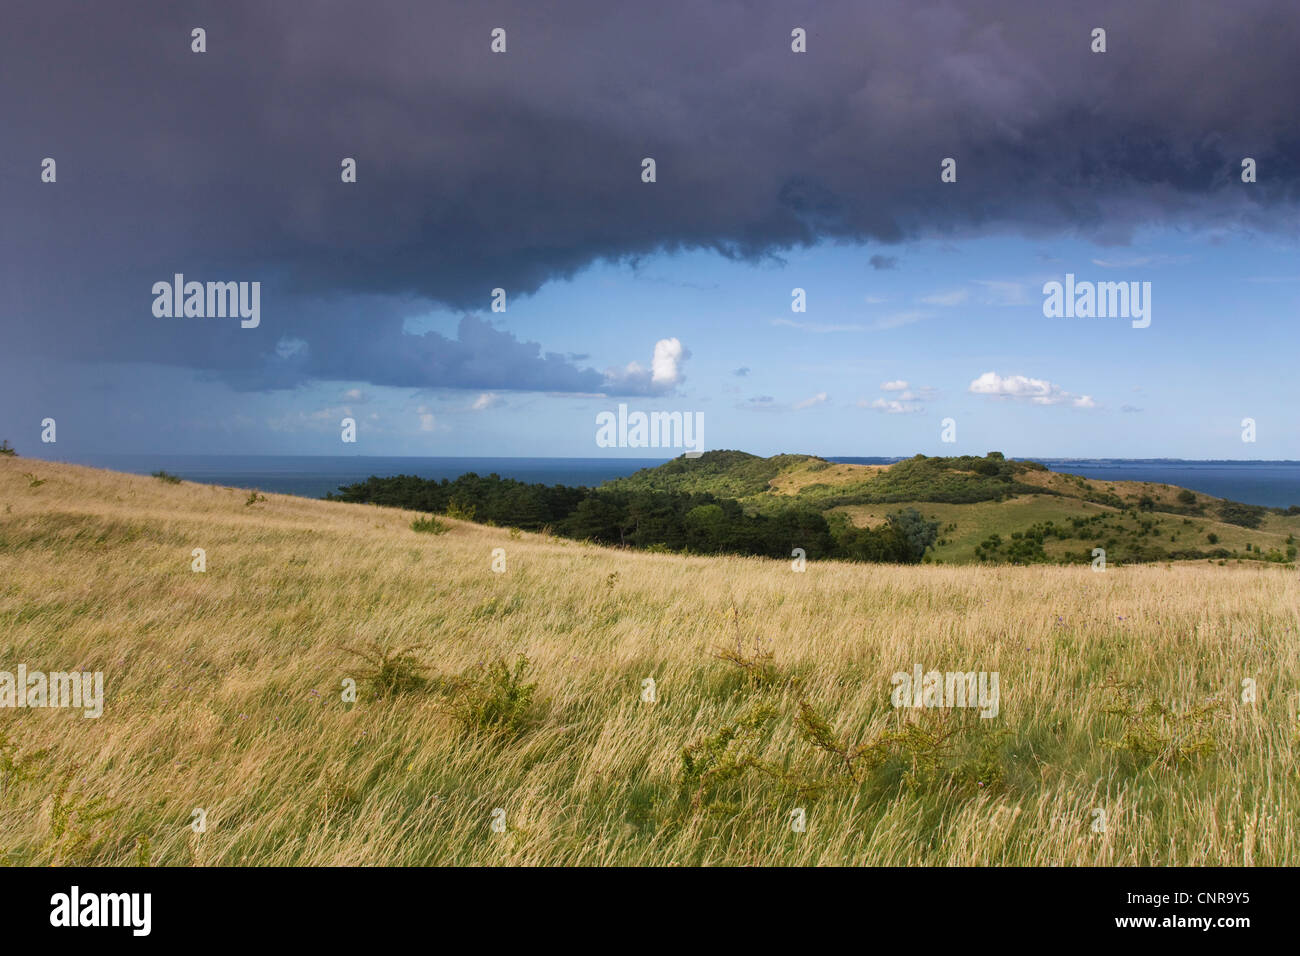 El paisaje costero en la tormentosa atmósfera, Alemania, en el Estado federado de Mecklemburgo-Pomerania Occidental, Hiddensee Foto de stock